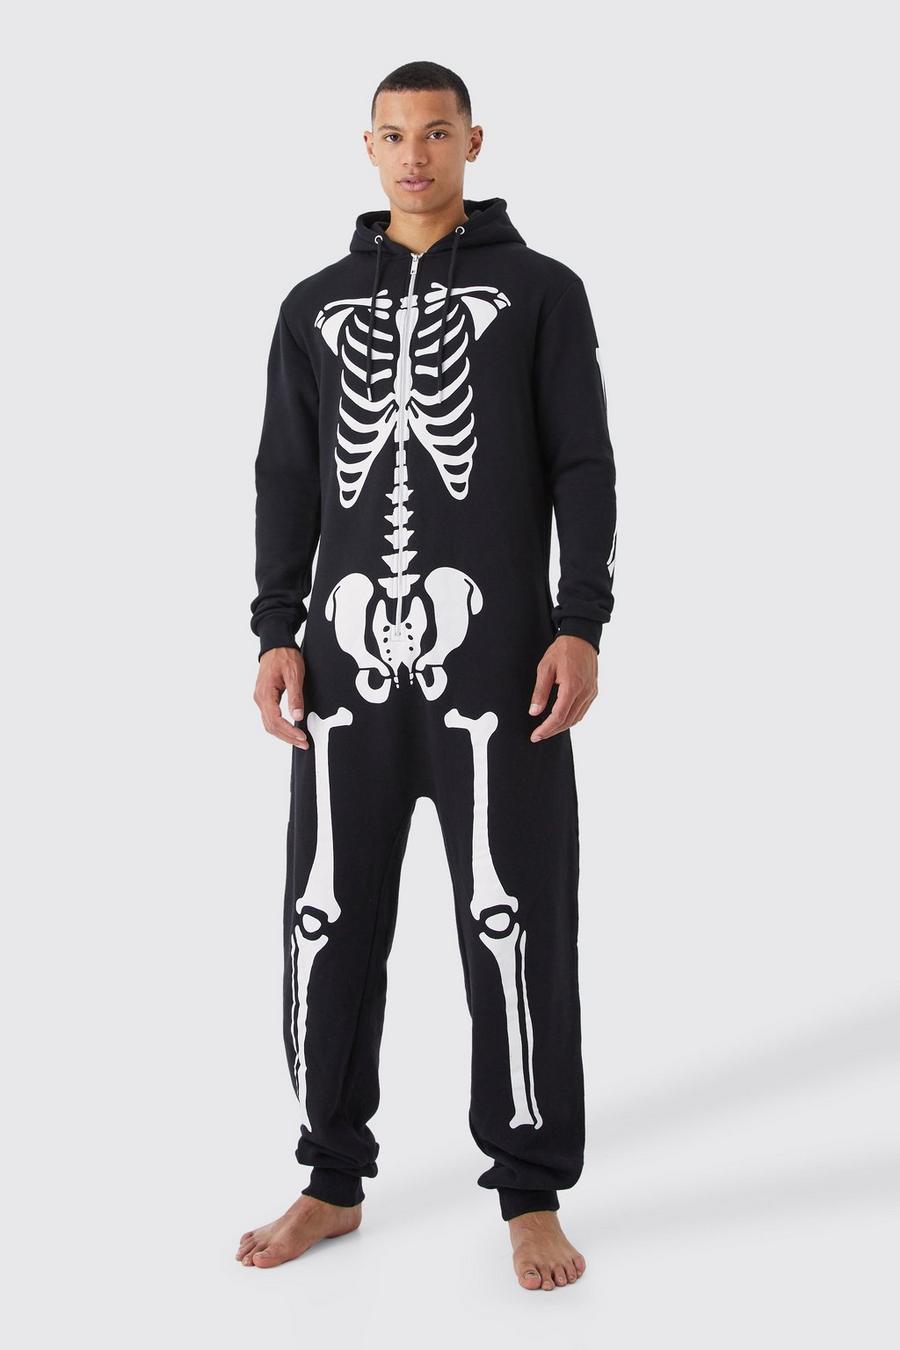 Pijama enterizo Tall de Halloween con esqueleto, Black negro